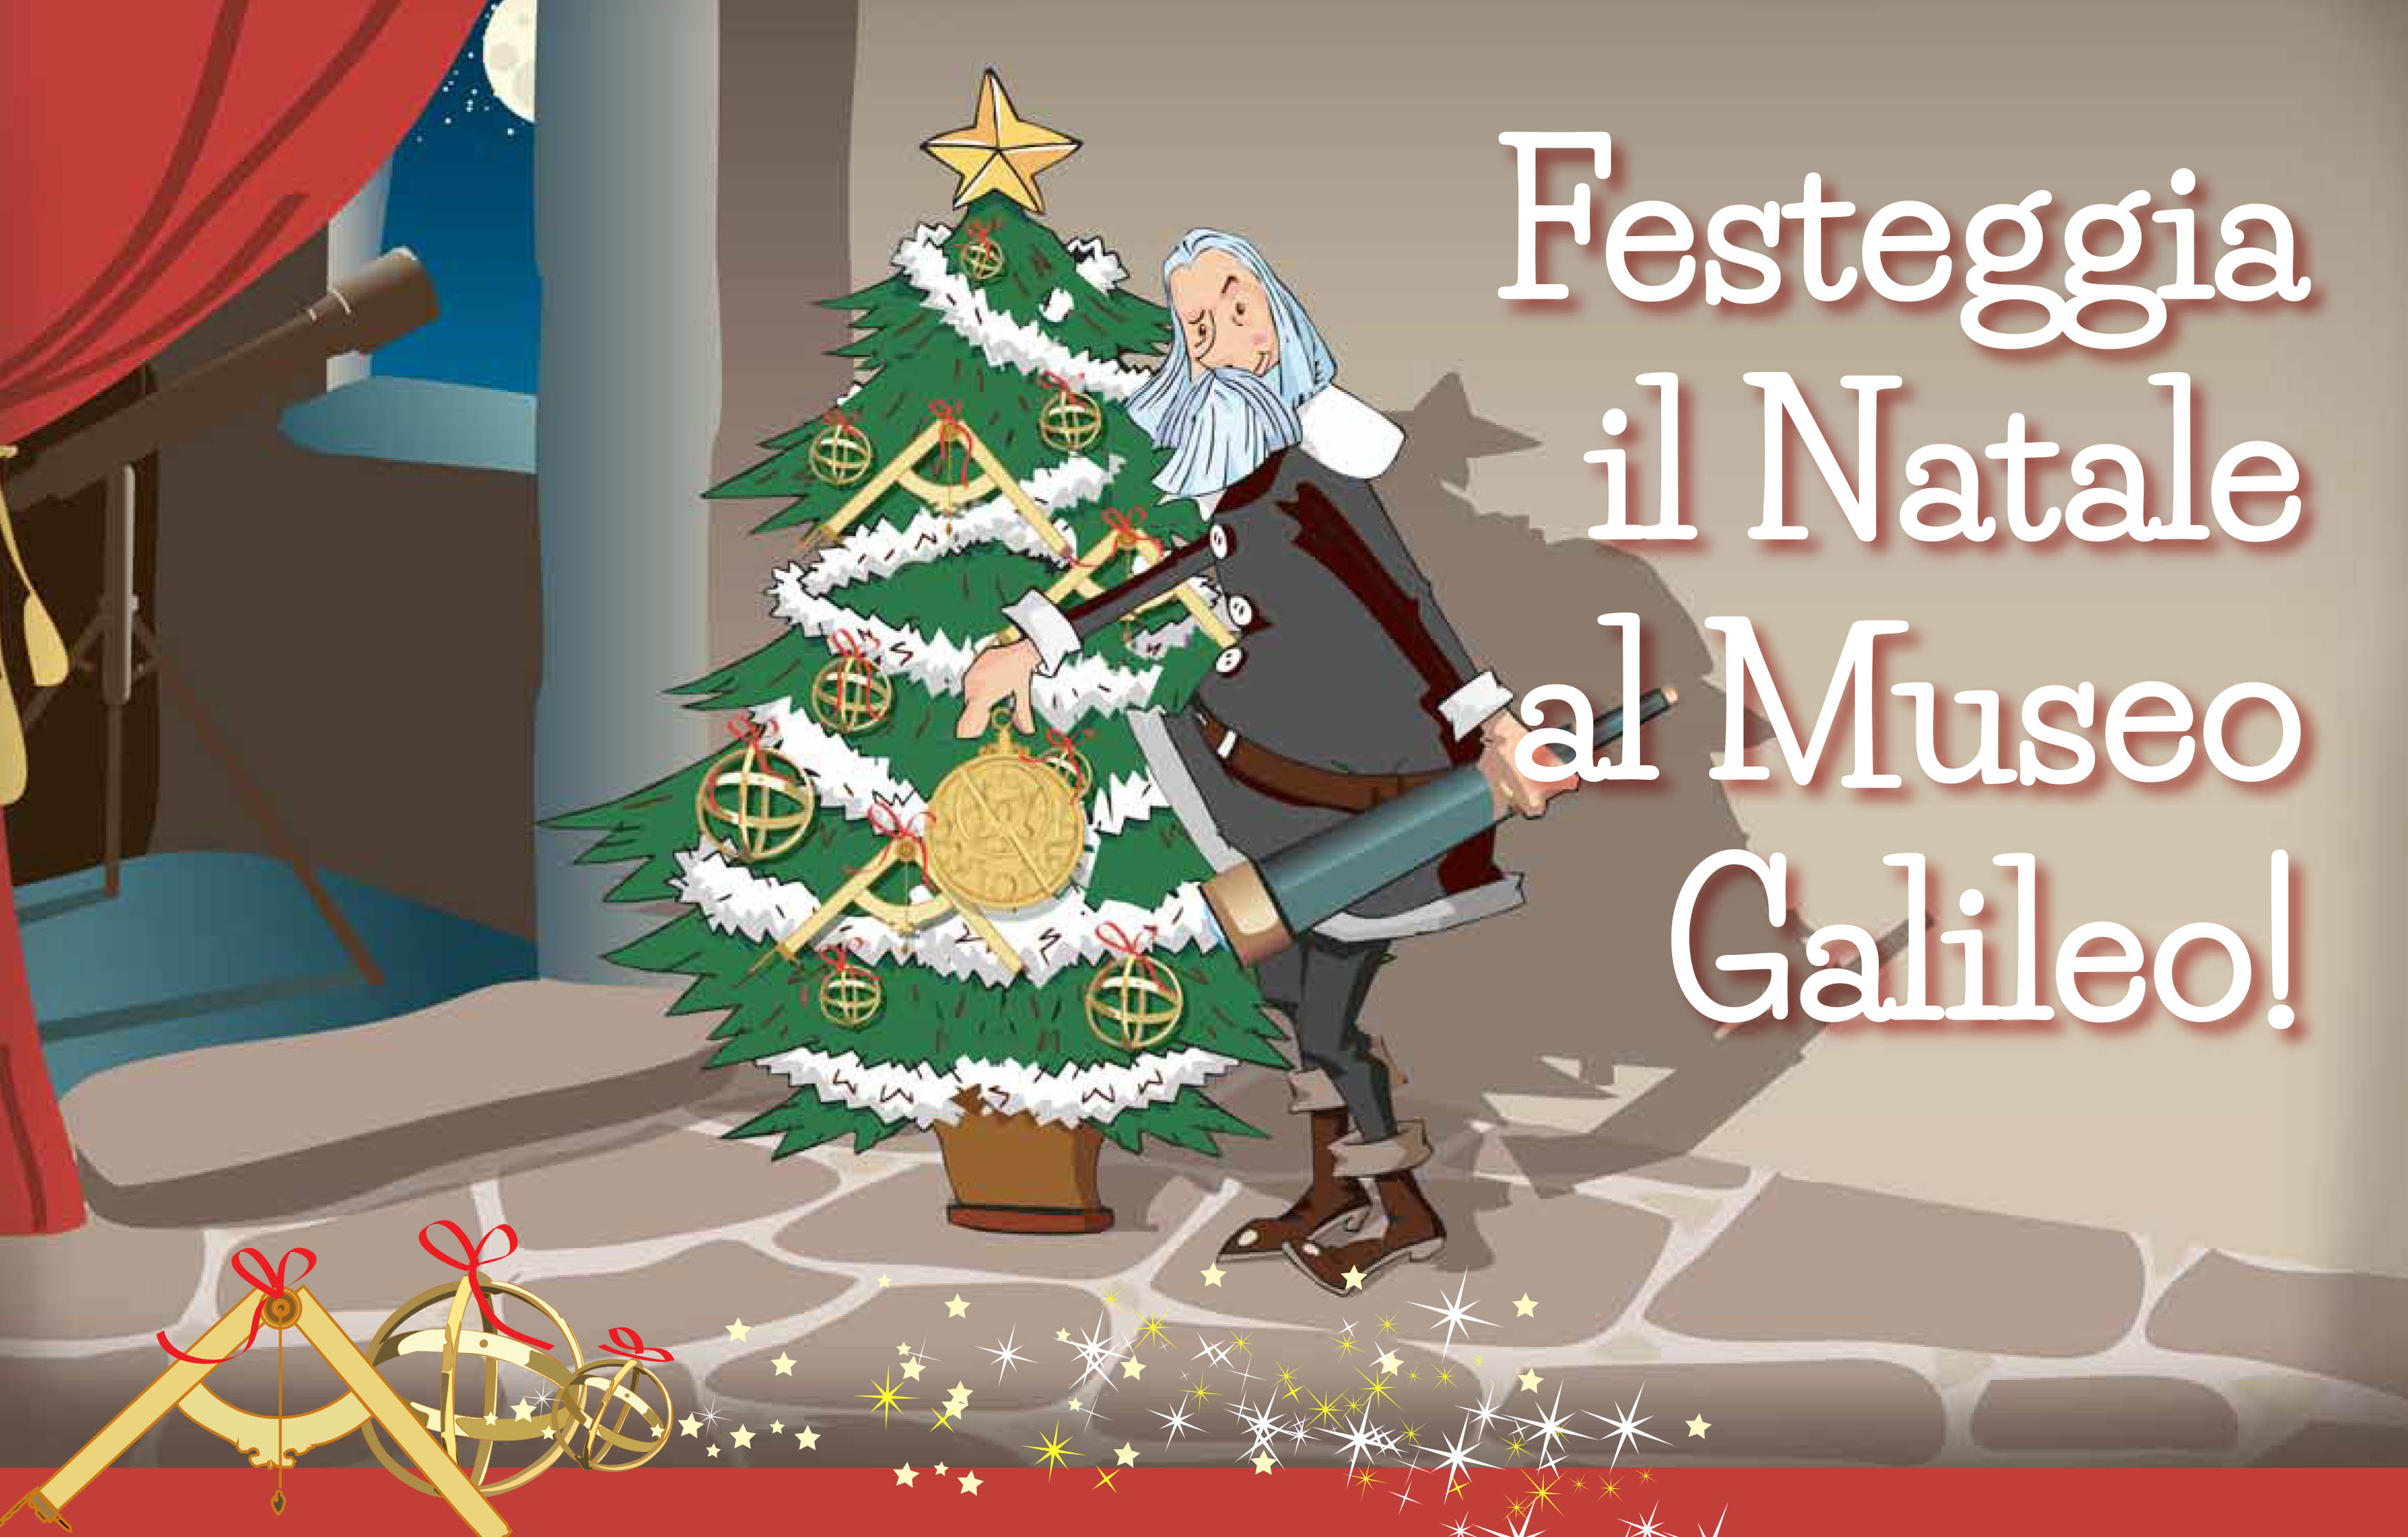 Festeggia il Natale al Museo Galileo